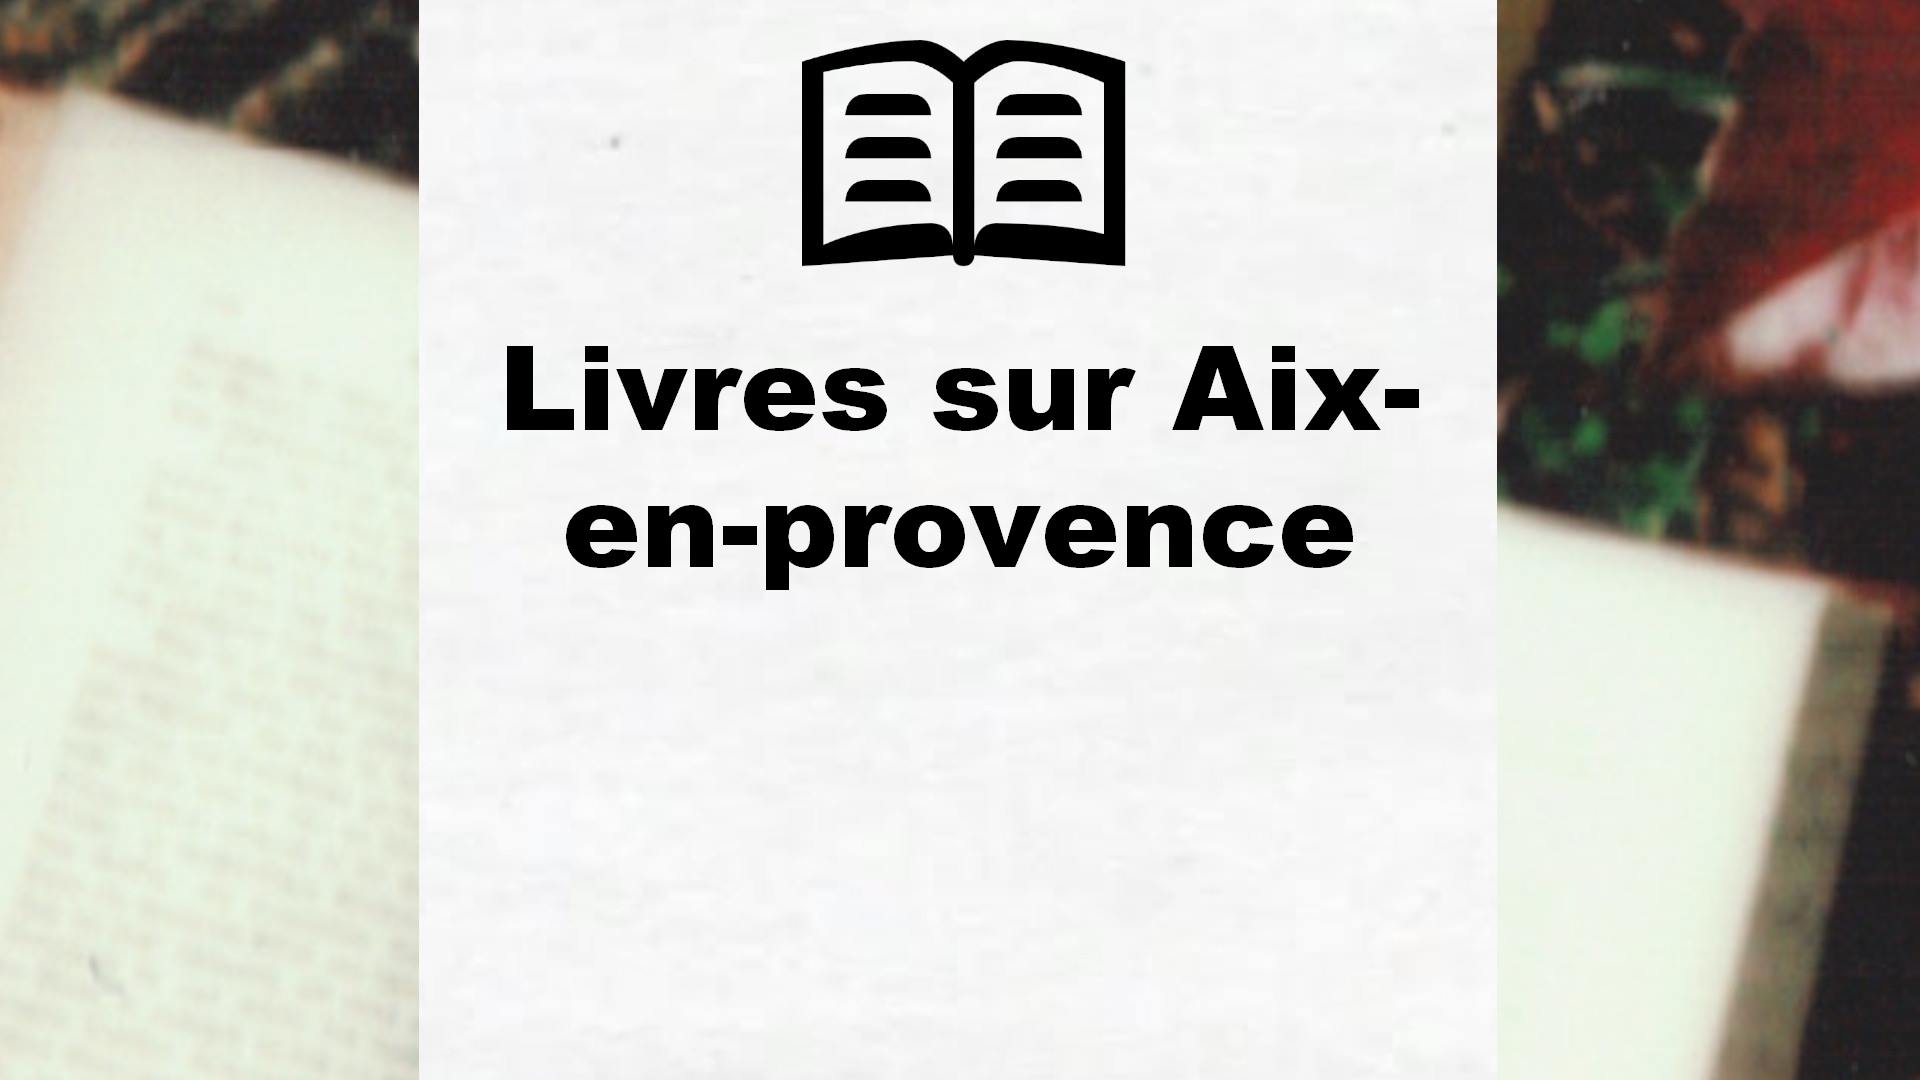 Livres sur Aix-en-provence